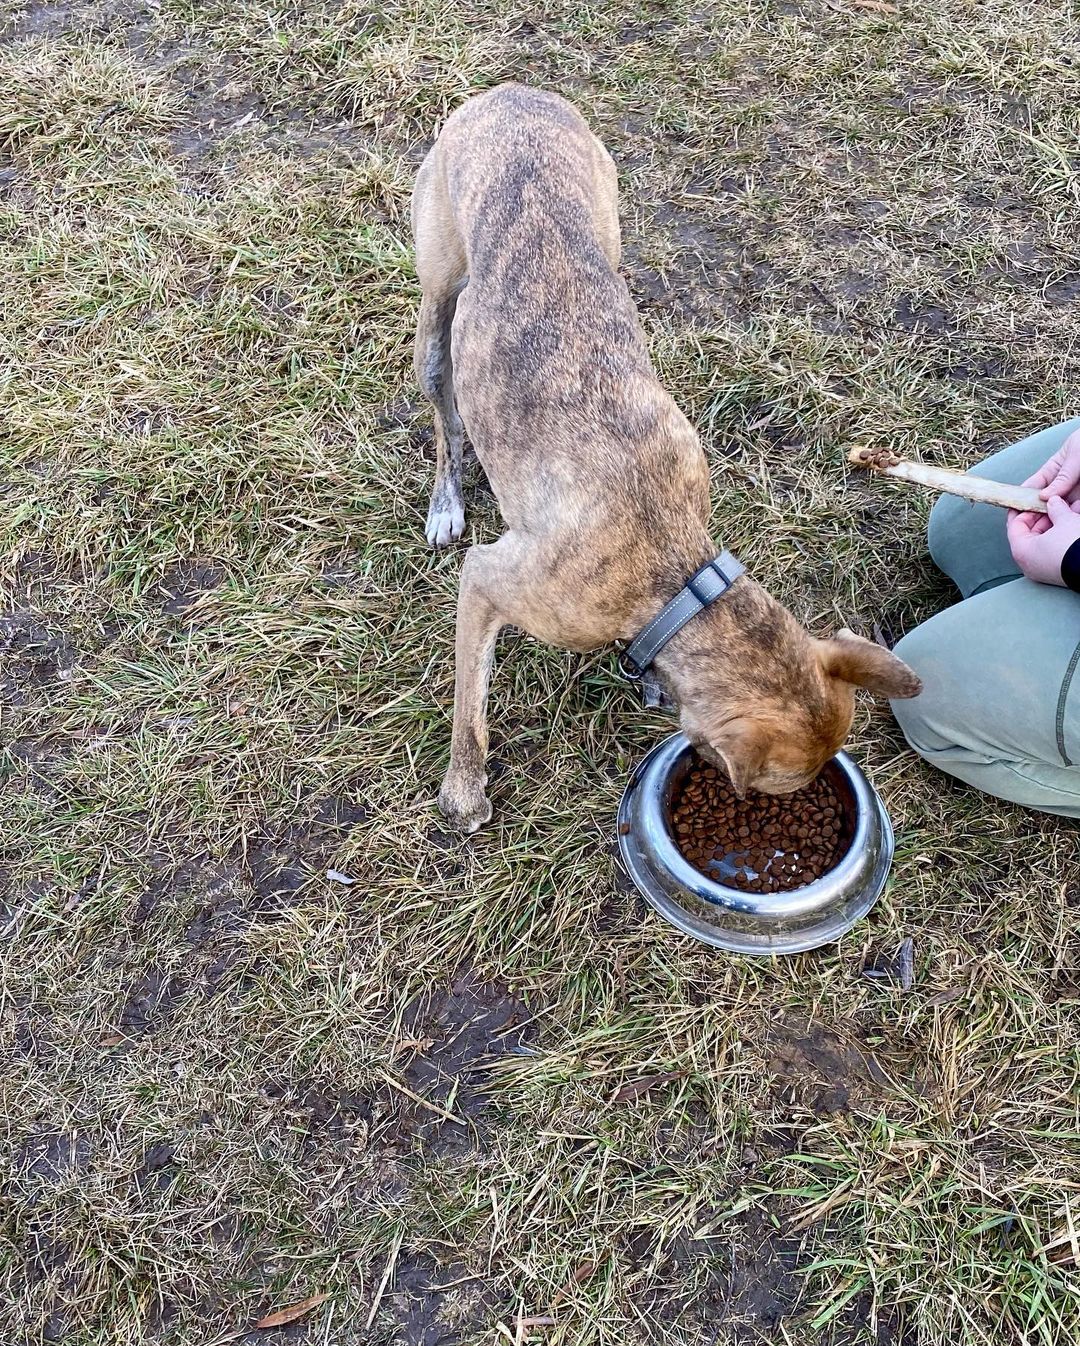 A cadela Izzy recebeu uma refeição após ser retirada do topo da árvore, ela não sofreu nenhum ferimento - apenas em seu ego canino. Foto: Reprodução/Instagram